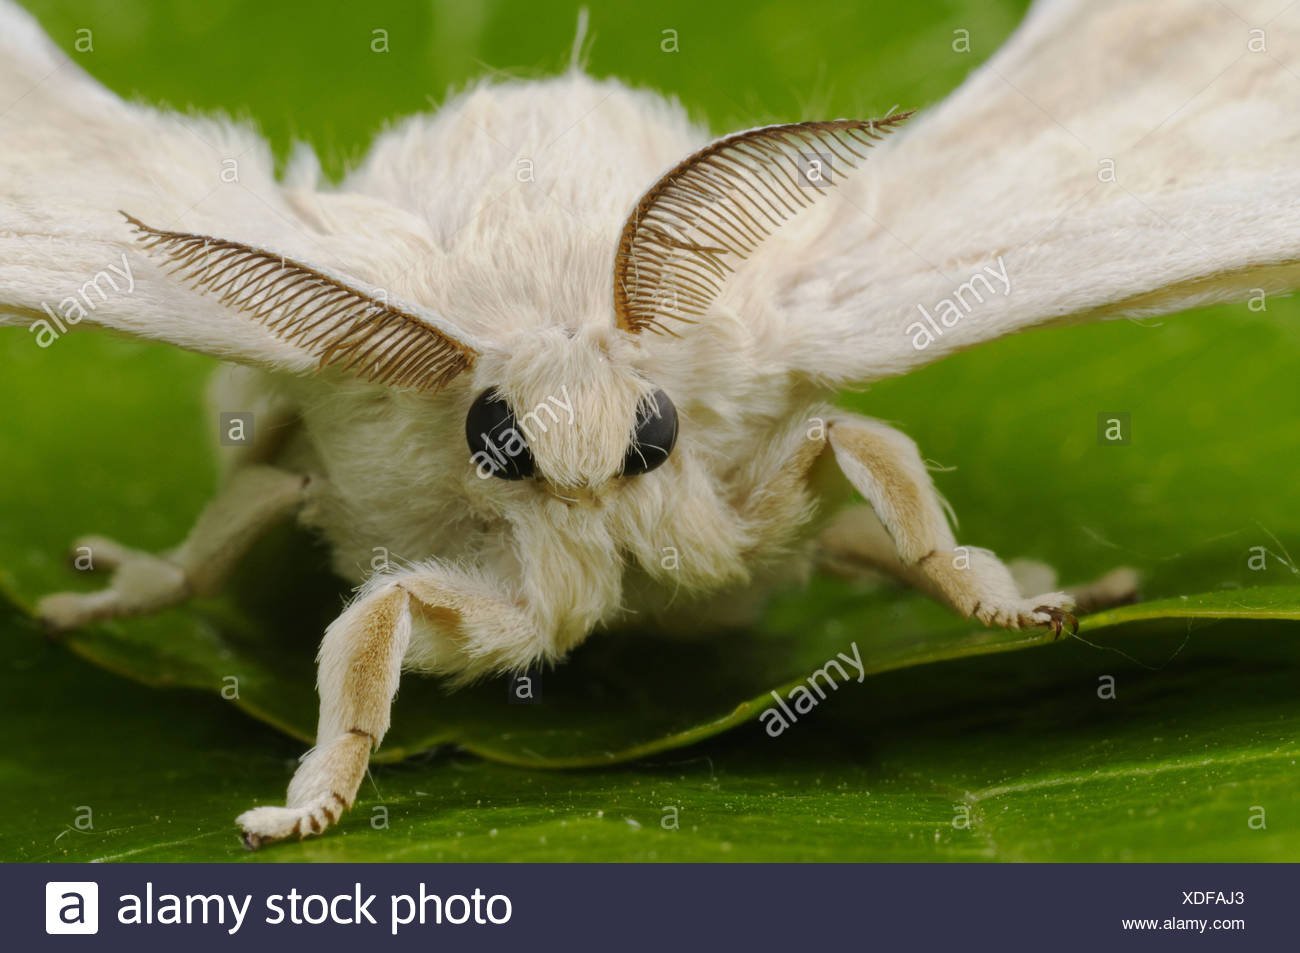 Тутовый шелкопряд купить. Венесуэльский пуделевый мотылек. Венесуэльский пуделевый мотылек тутовый шелкопряд. Тутовый шелкопряд бабочка. Моль тутовый шелкопряд.